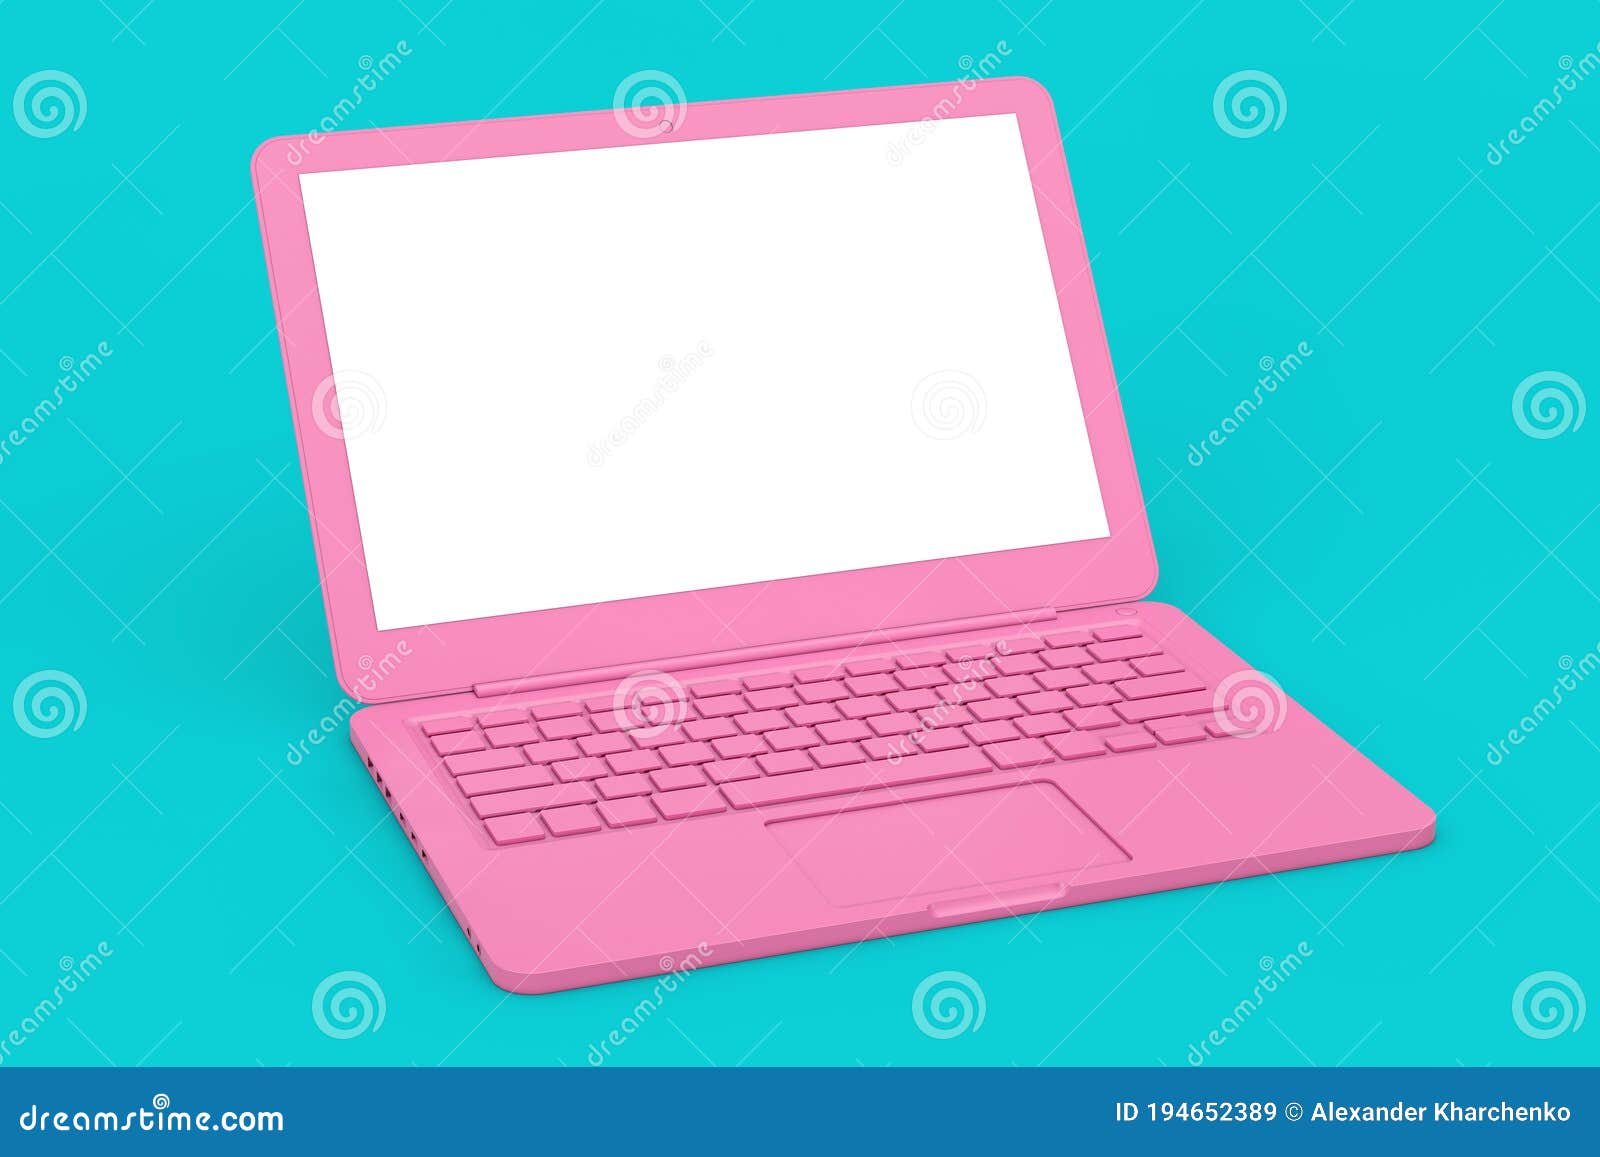 Chiếc máy tính xách tay hồng hiện đại không chỉ có thiết kế đẹp mắt mà còn đáp ứng tất cả nhu cầu công việc của bạn. Nếu bạn muốn cải thiện năng suất làm việc và đồng thời muốn có một thiết bị cá nhân thời trang, hãy không ngại ngần click vào hình ảnh để tìm hiểu thêm về chiếc laptop này. 